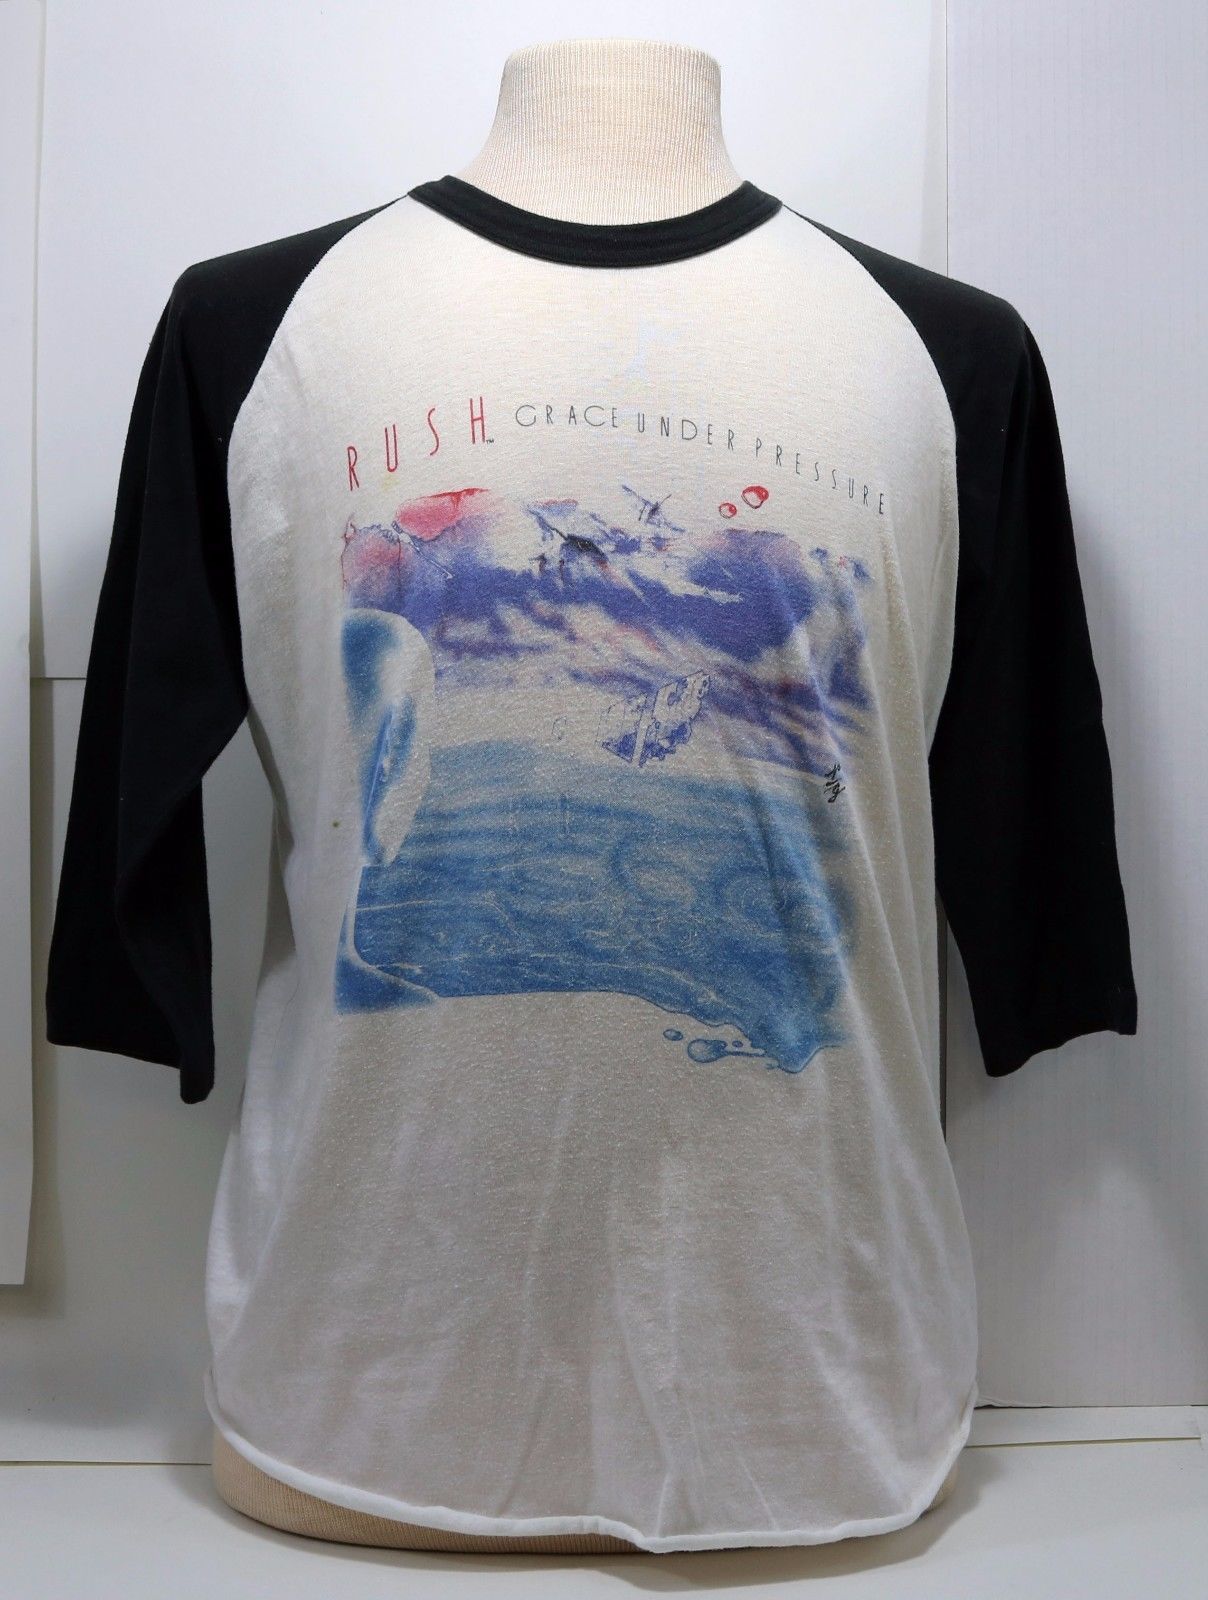 Vintage 1984 RUSH Grace Under Pressure Tour concert T-Shirt